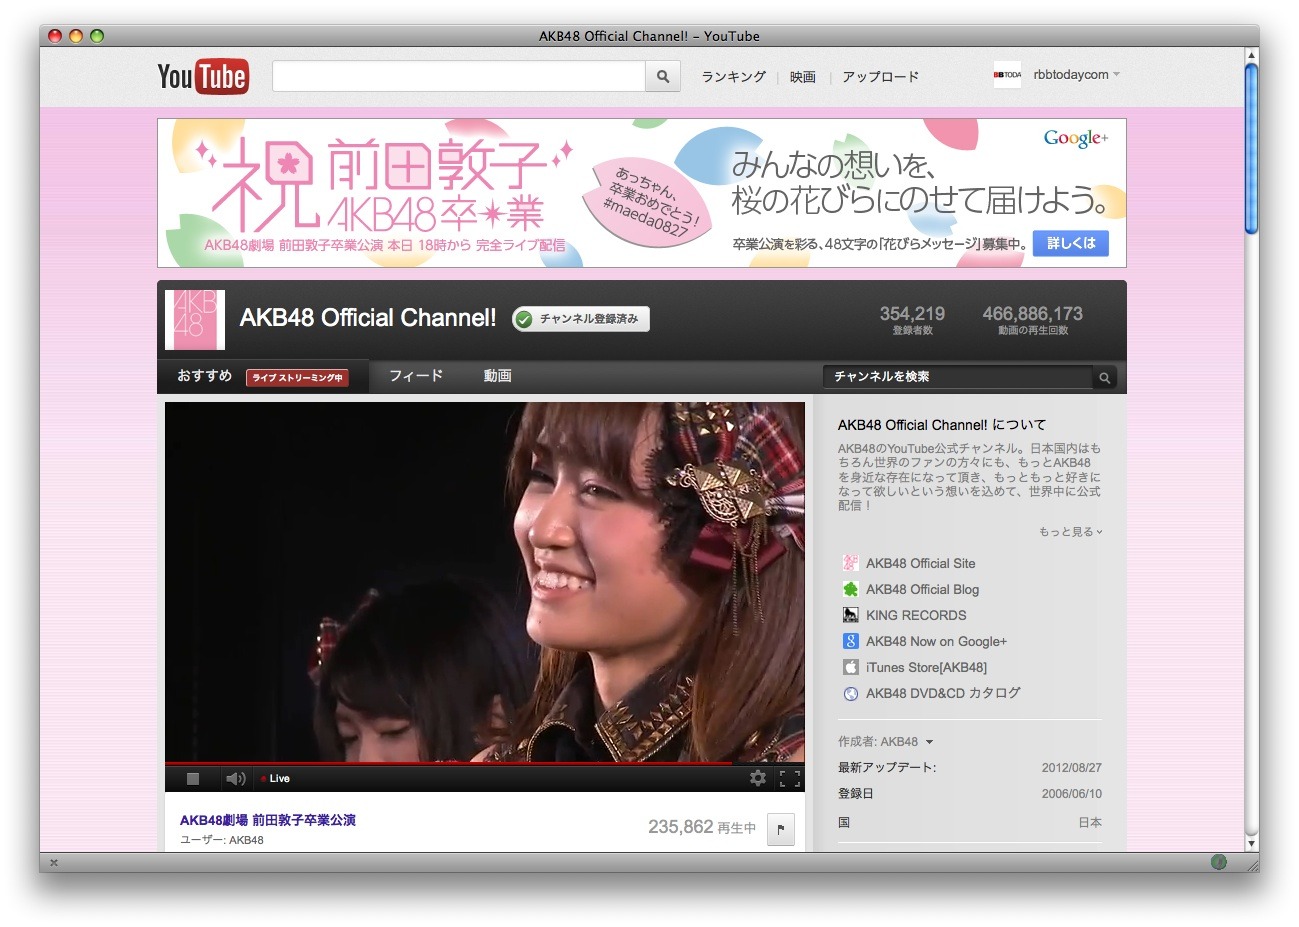 前田敦子のakb48卒業公演 Youtube最多再生数タイミングは Rbb Today